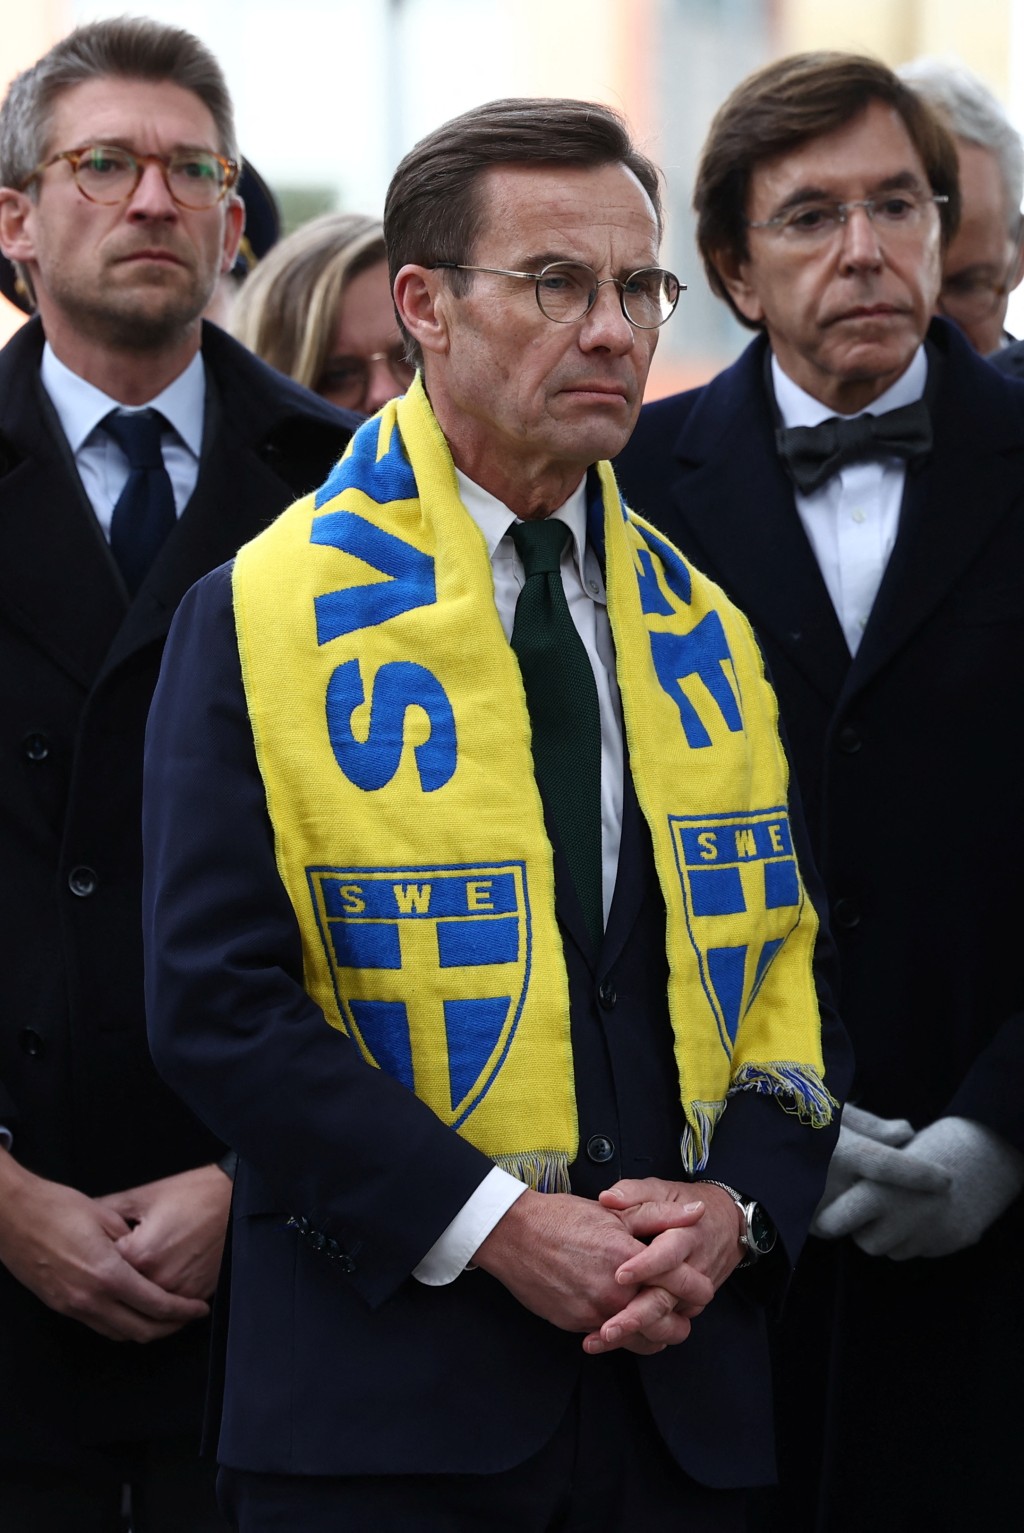 瑞典总理基斯达夫臣出席悼念活动。路透社